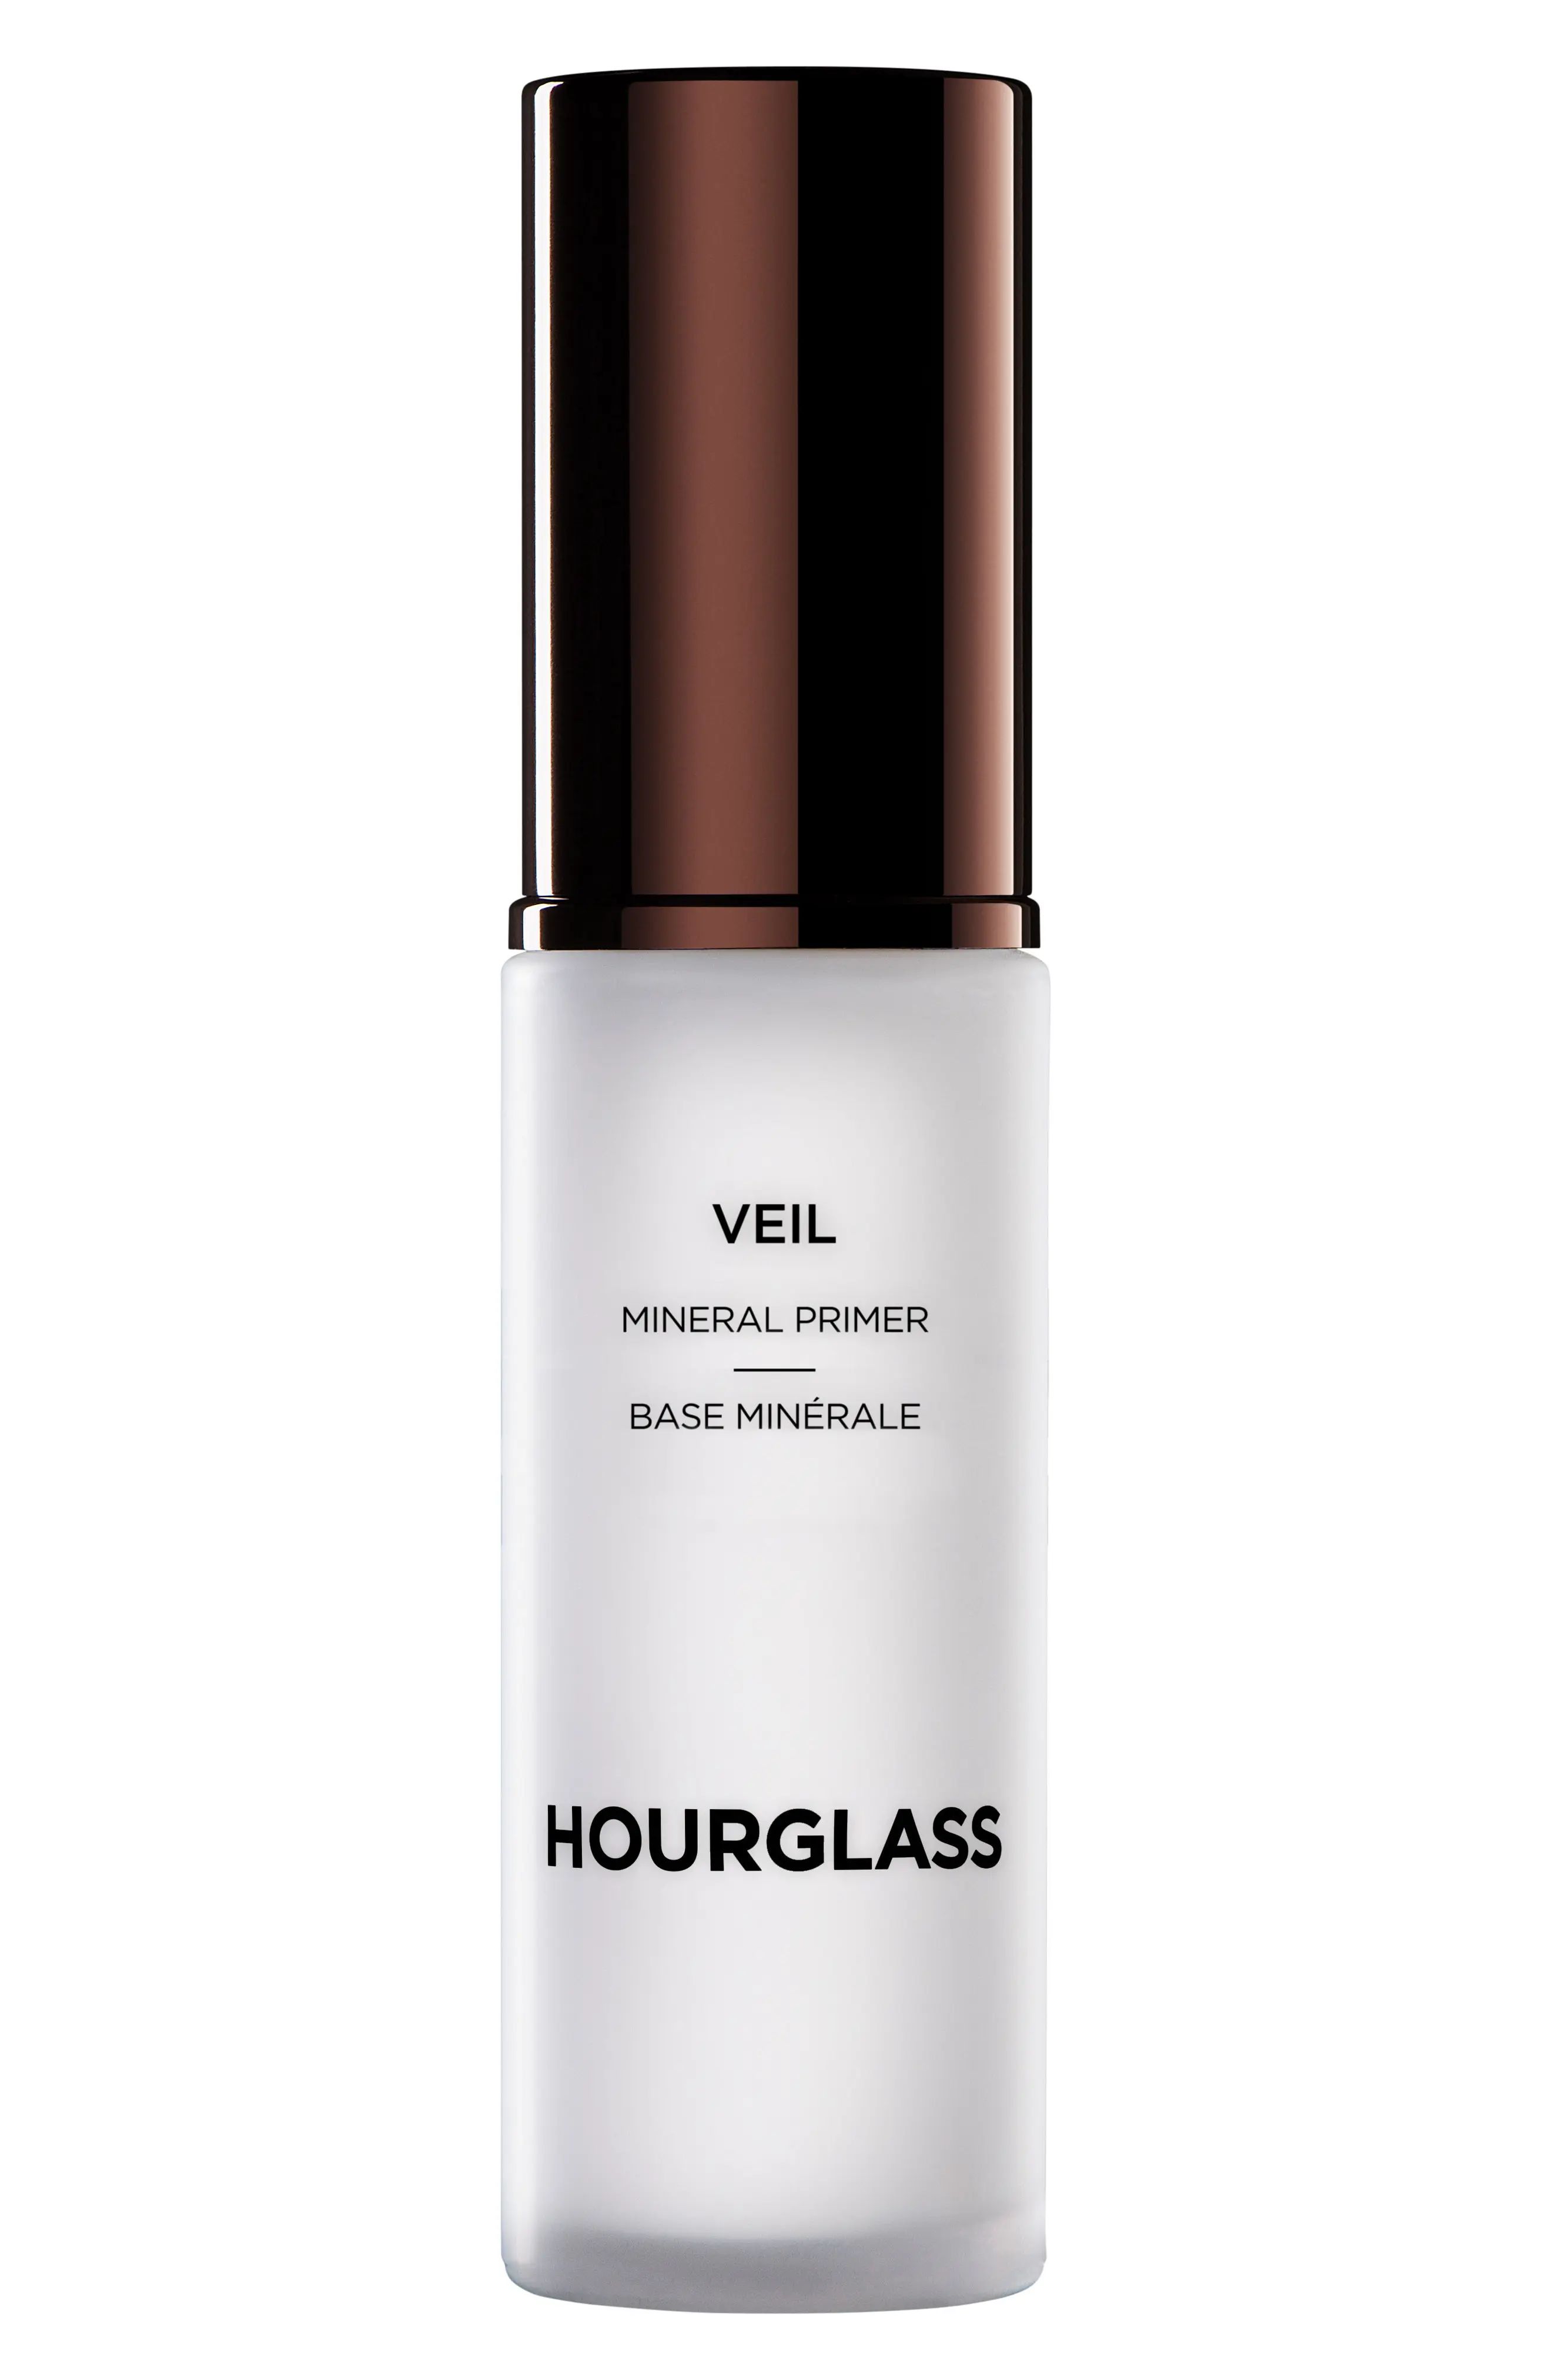 Hourglass Veil Mineral Primer, Size 1.01 oz - No Color | Nordstrom